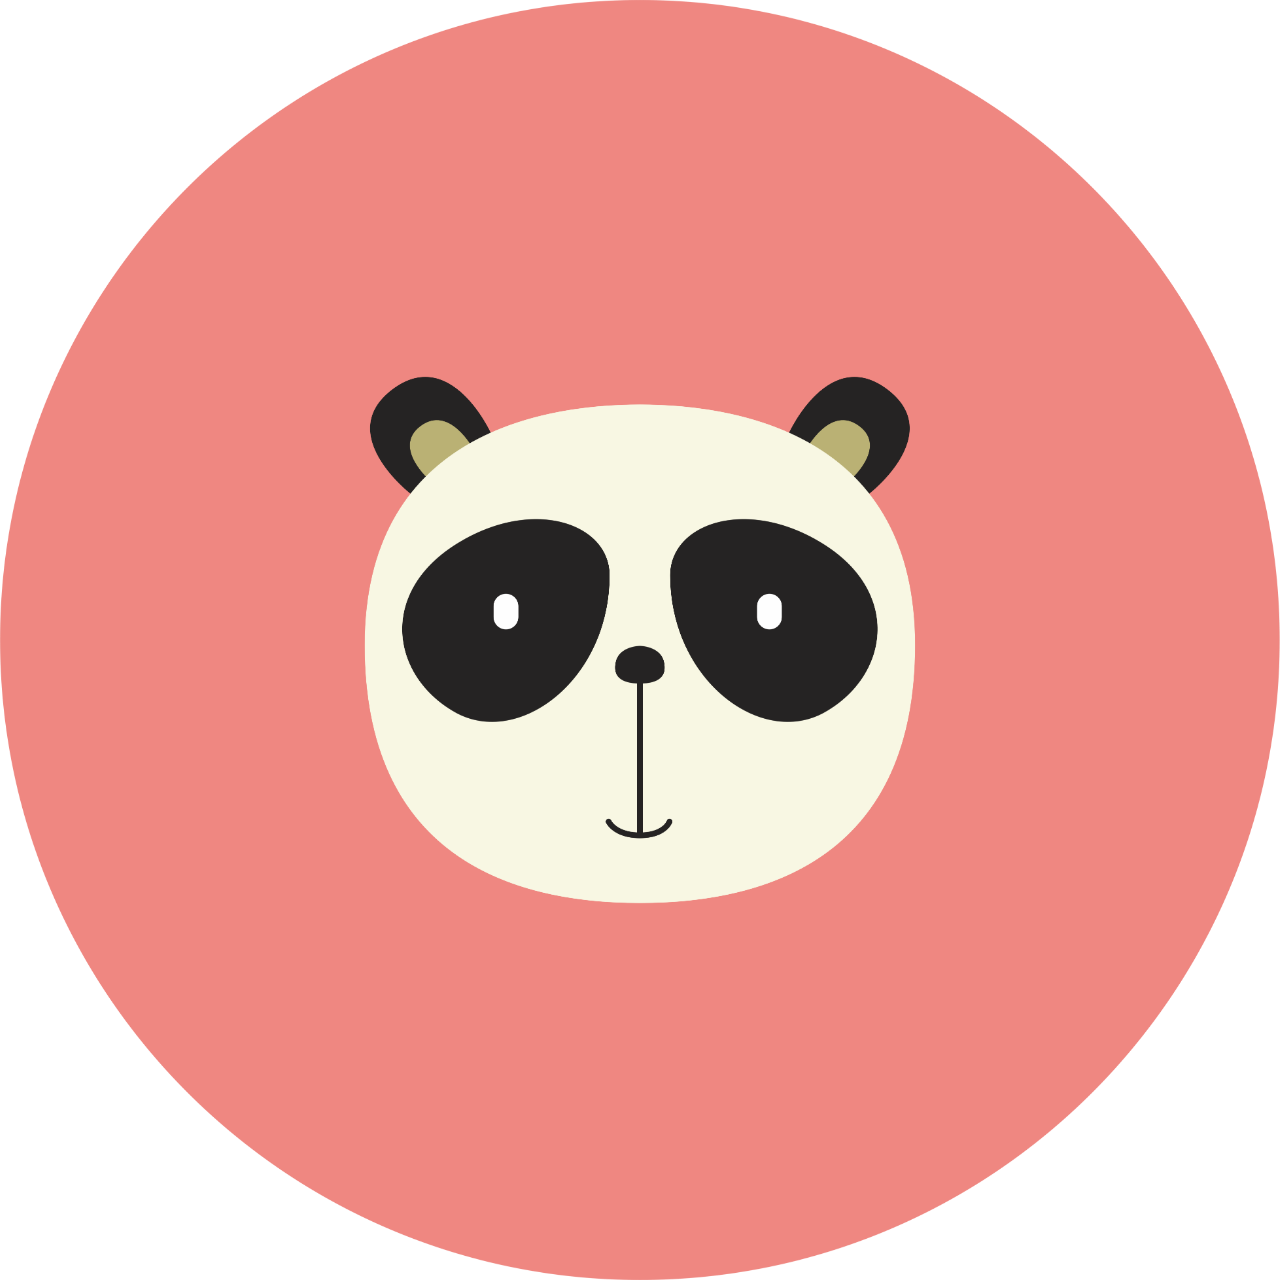 Koyu pembe bir daire içinde göz halkaları siyah ve siyah beyaz renkli bir panda başı